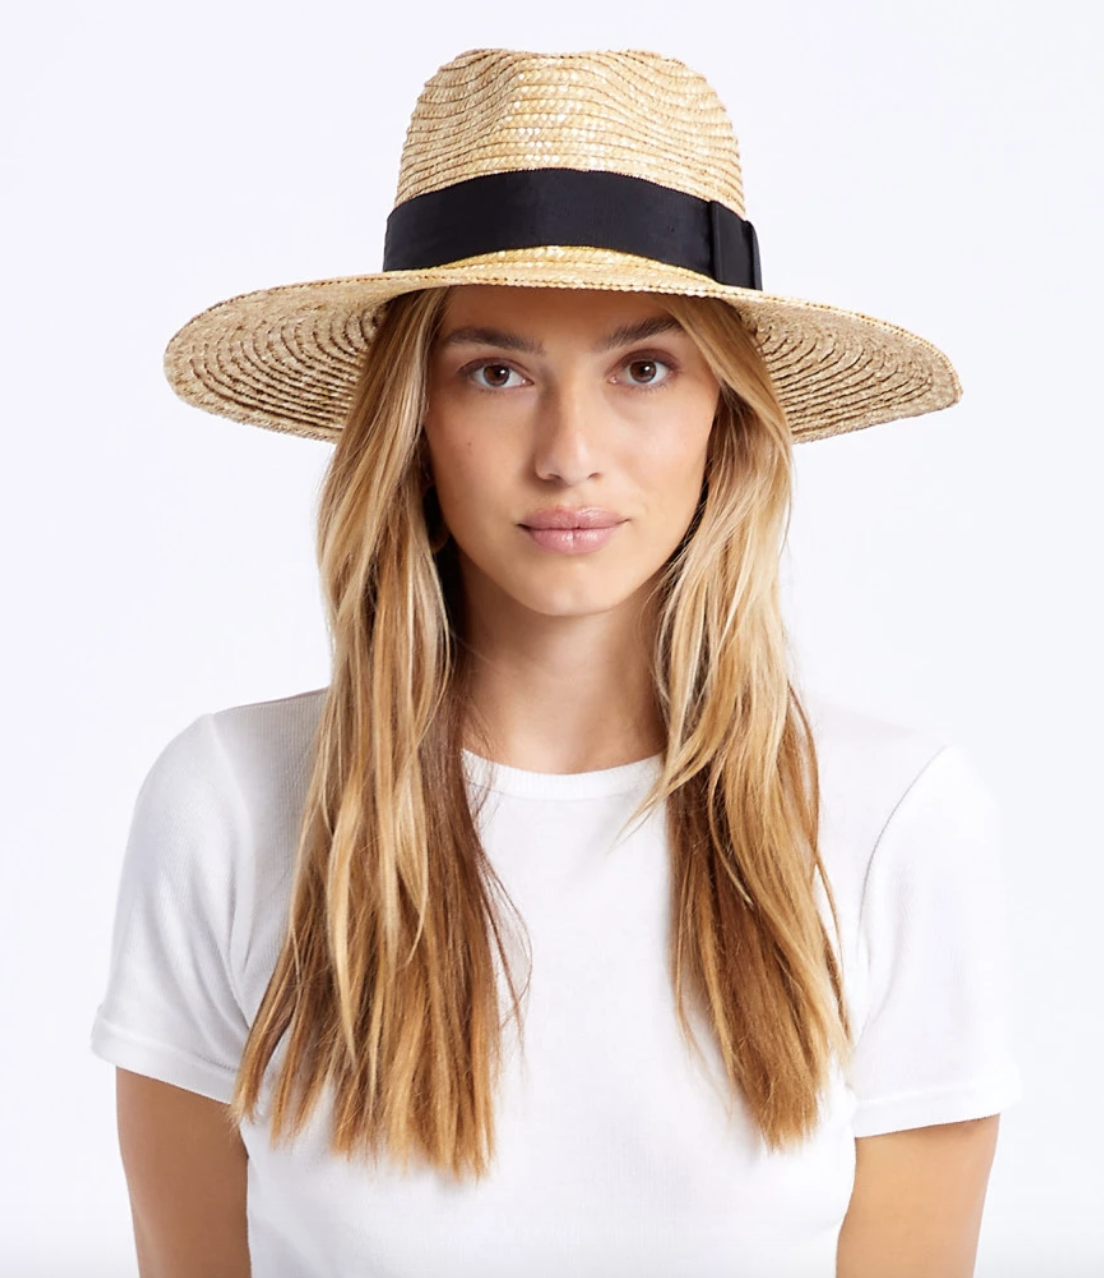 model wearing the hat